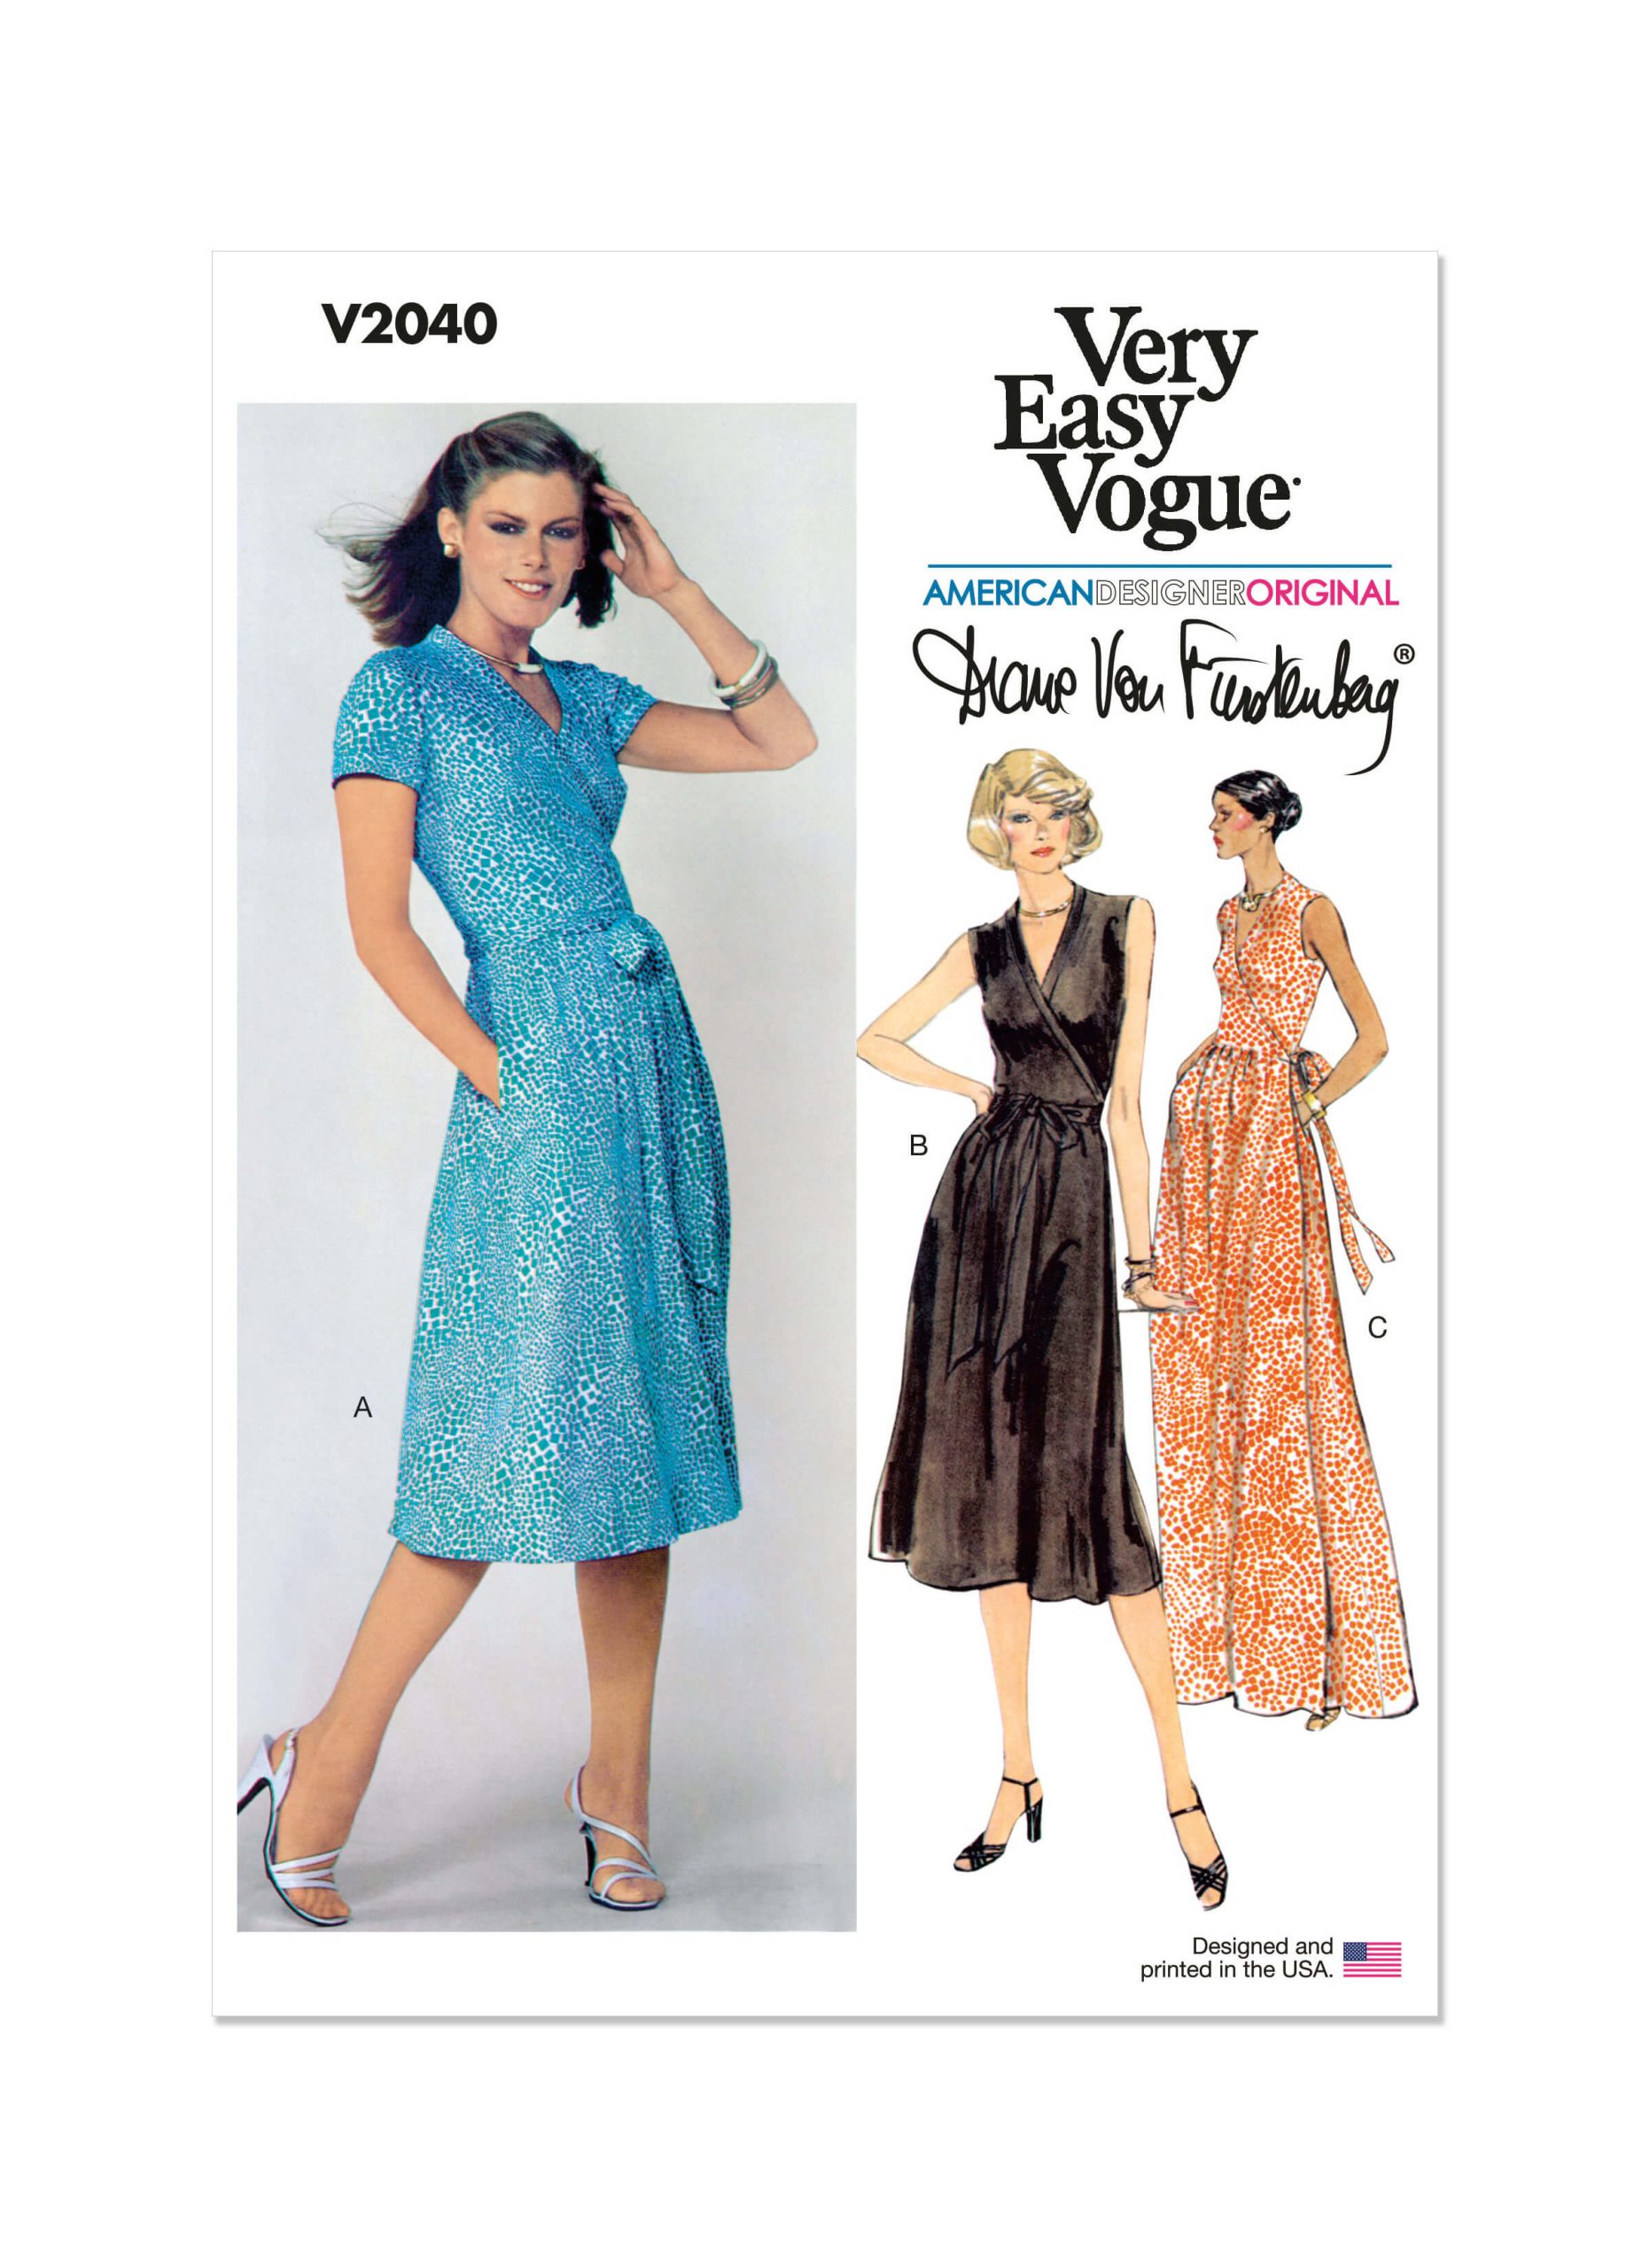 Vogue Patterns V2040 Misses' Front Wrap Dresses by Diane von Furstenberg